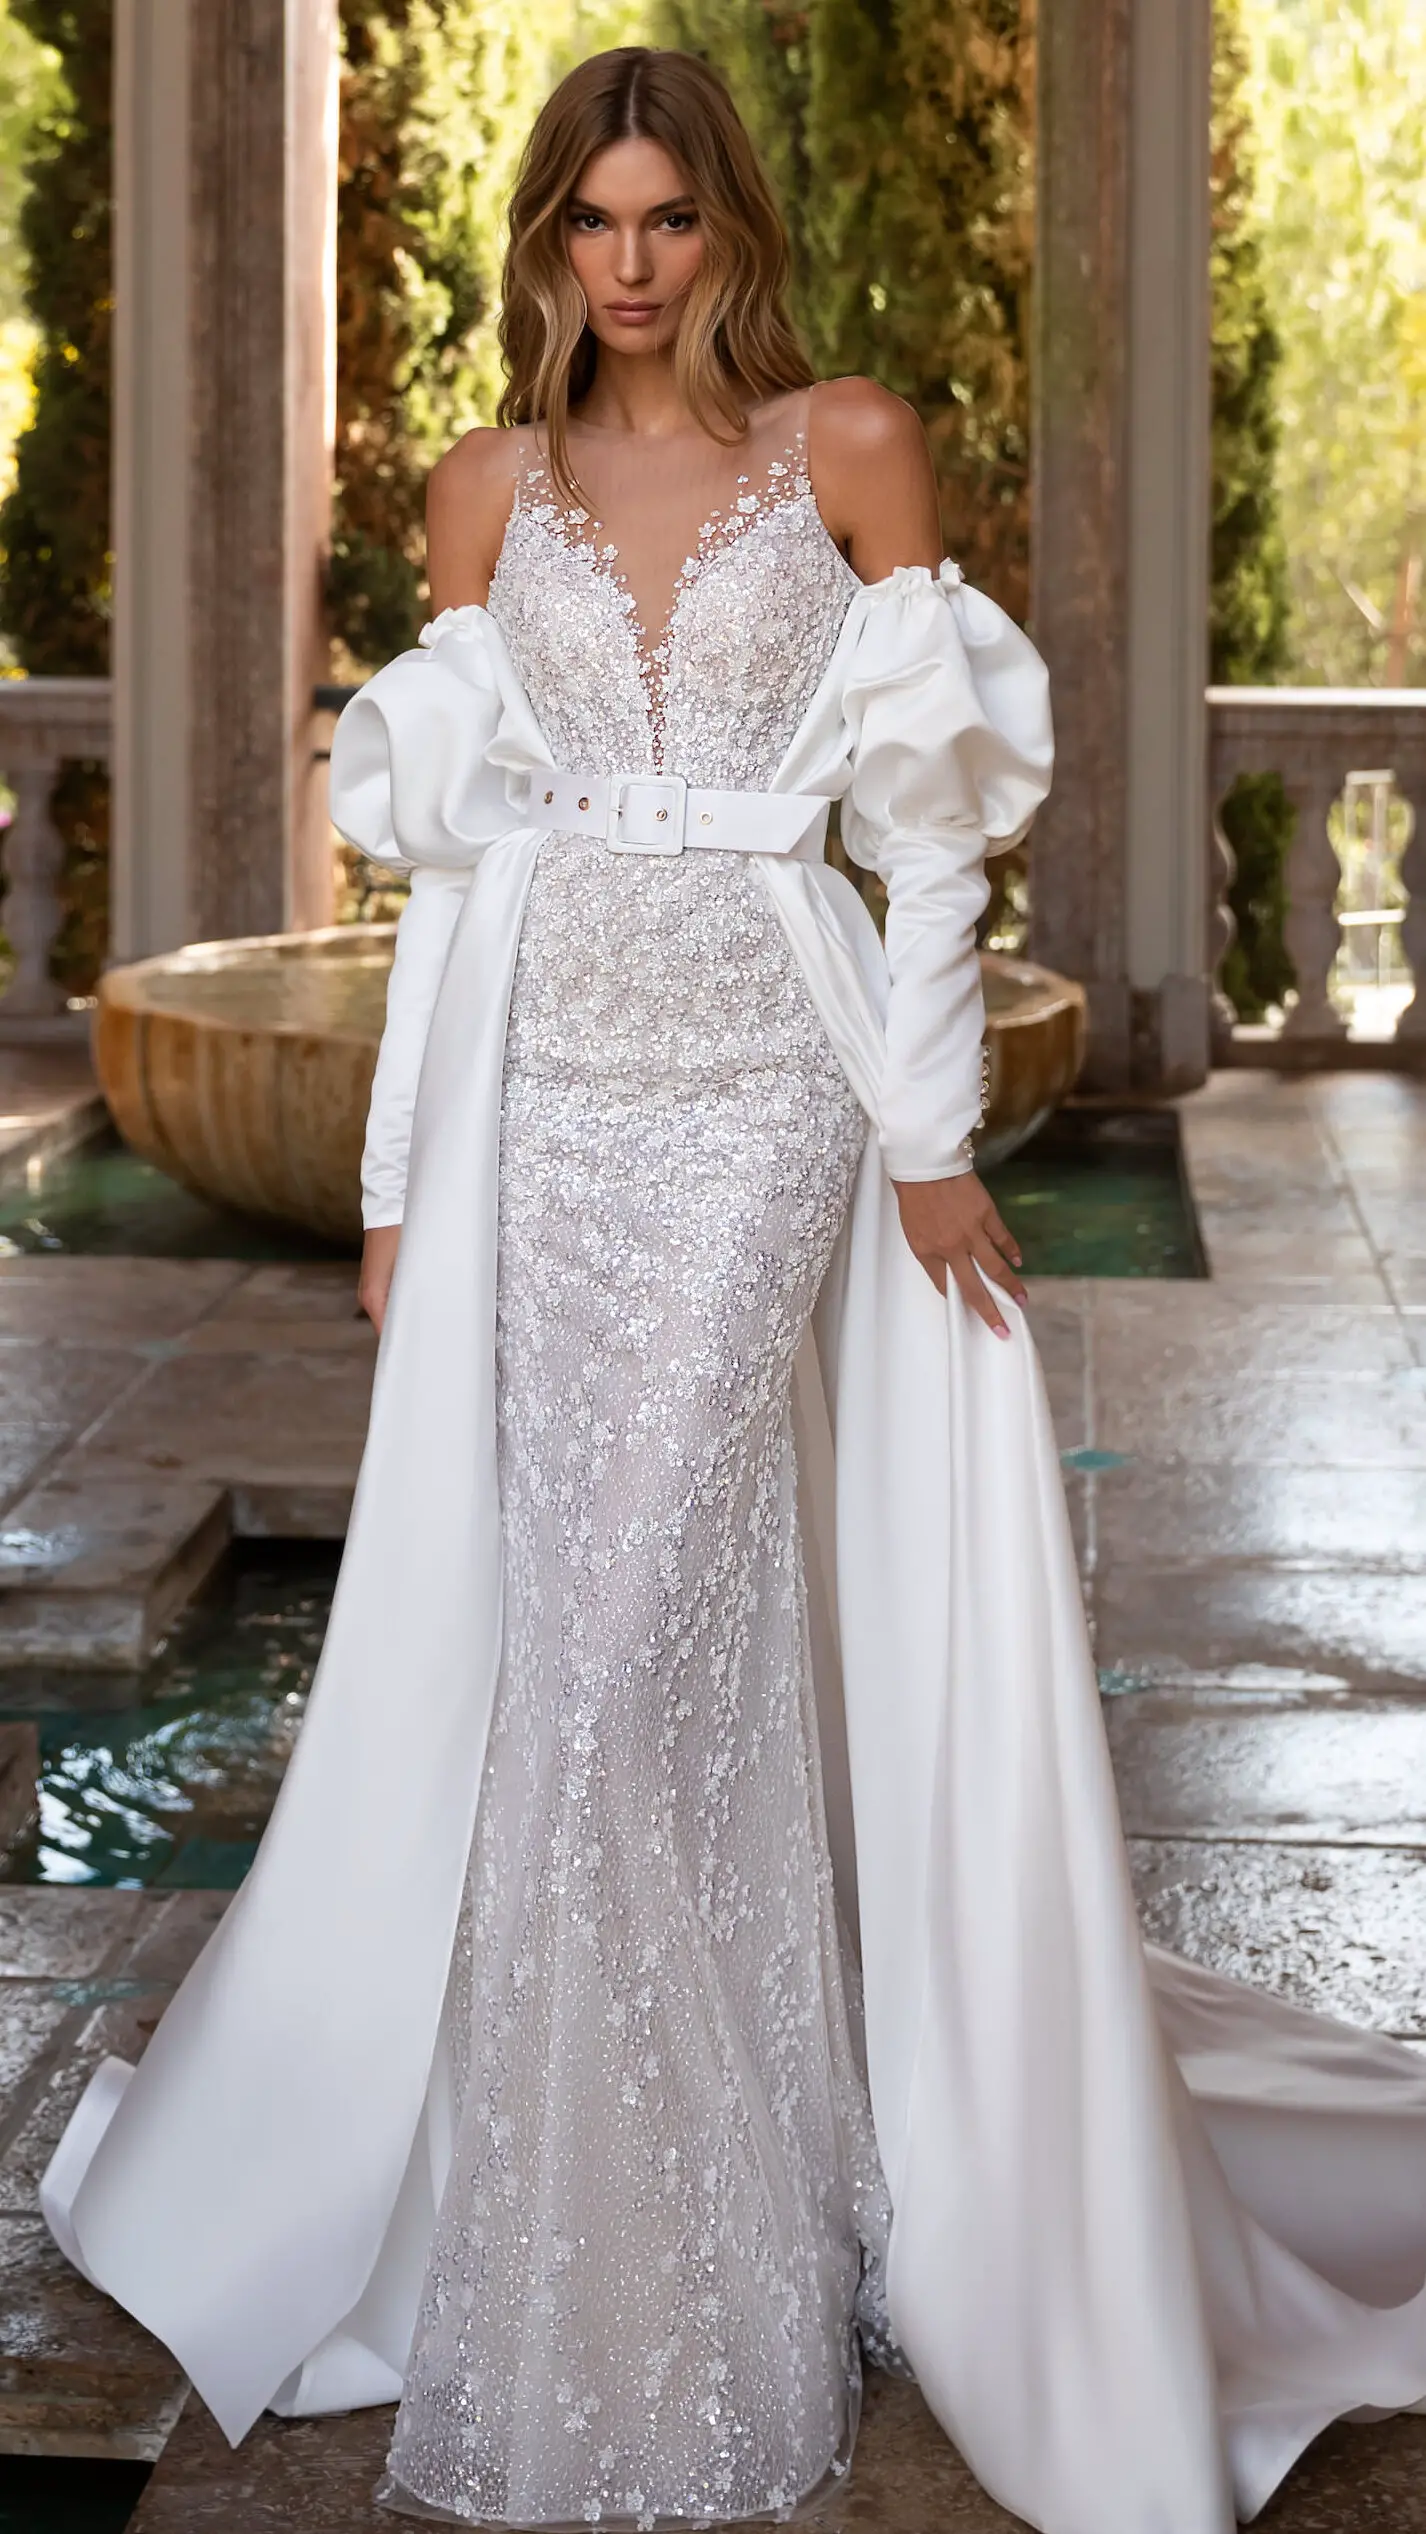 Zahara by Armonia wedding dress